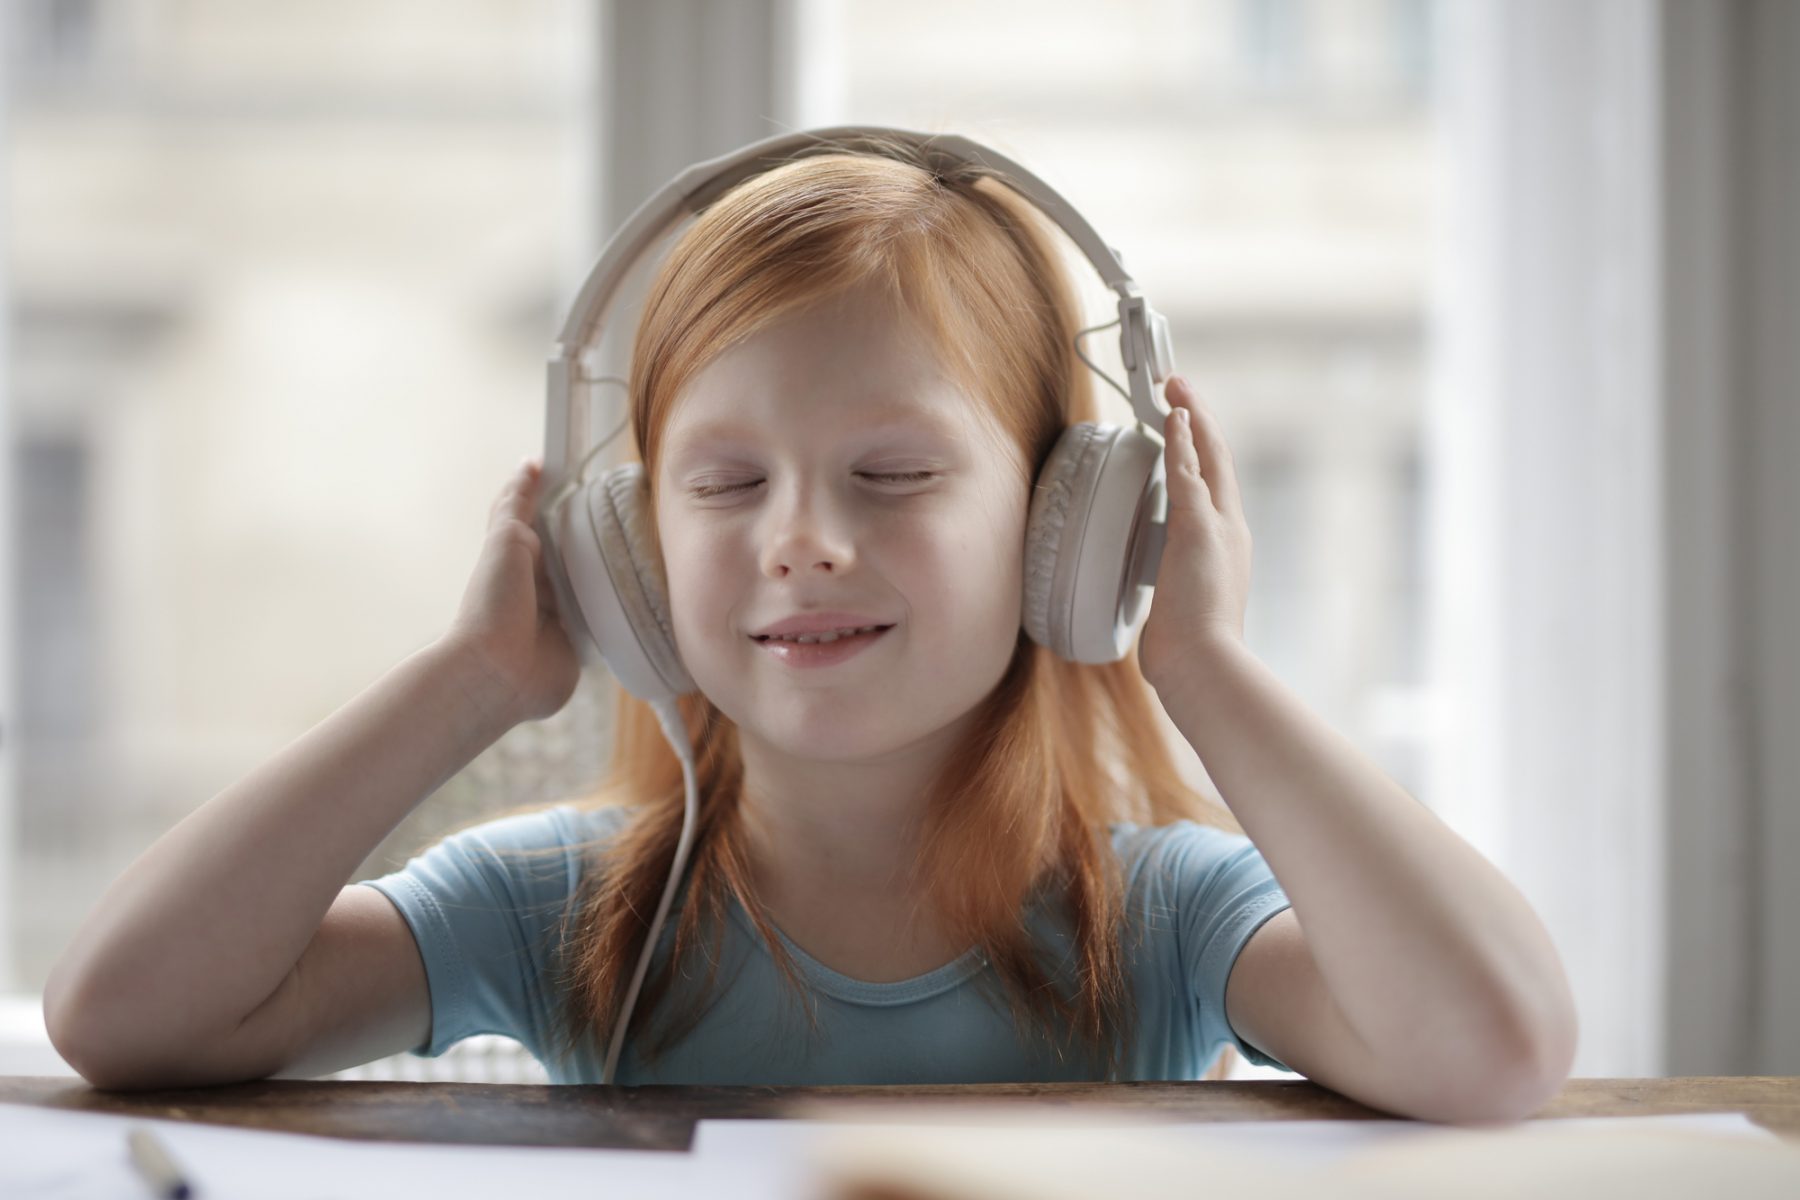 Ακοή: Η υπερβολική χρήση ακουστικών μπορεί να προκαλέσει απώλεια ακοής